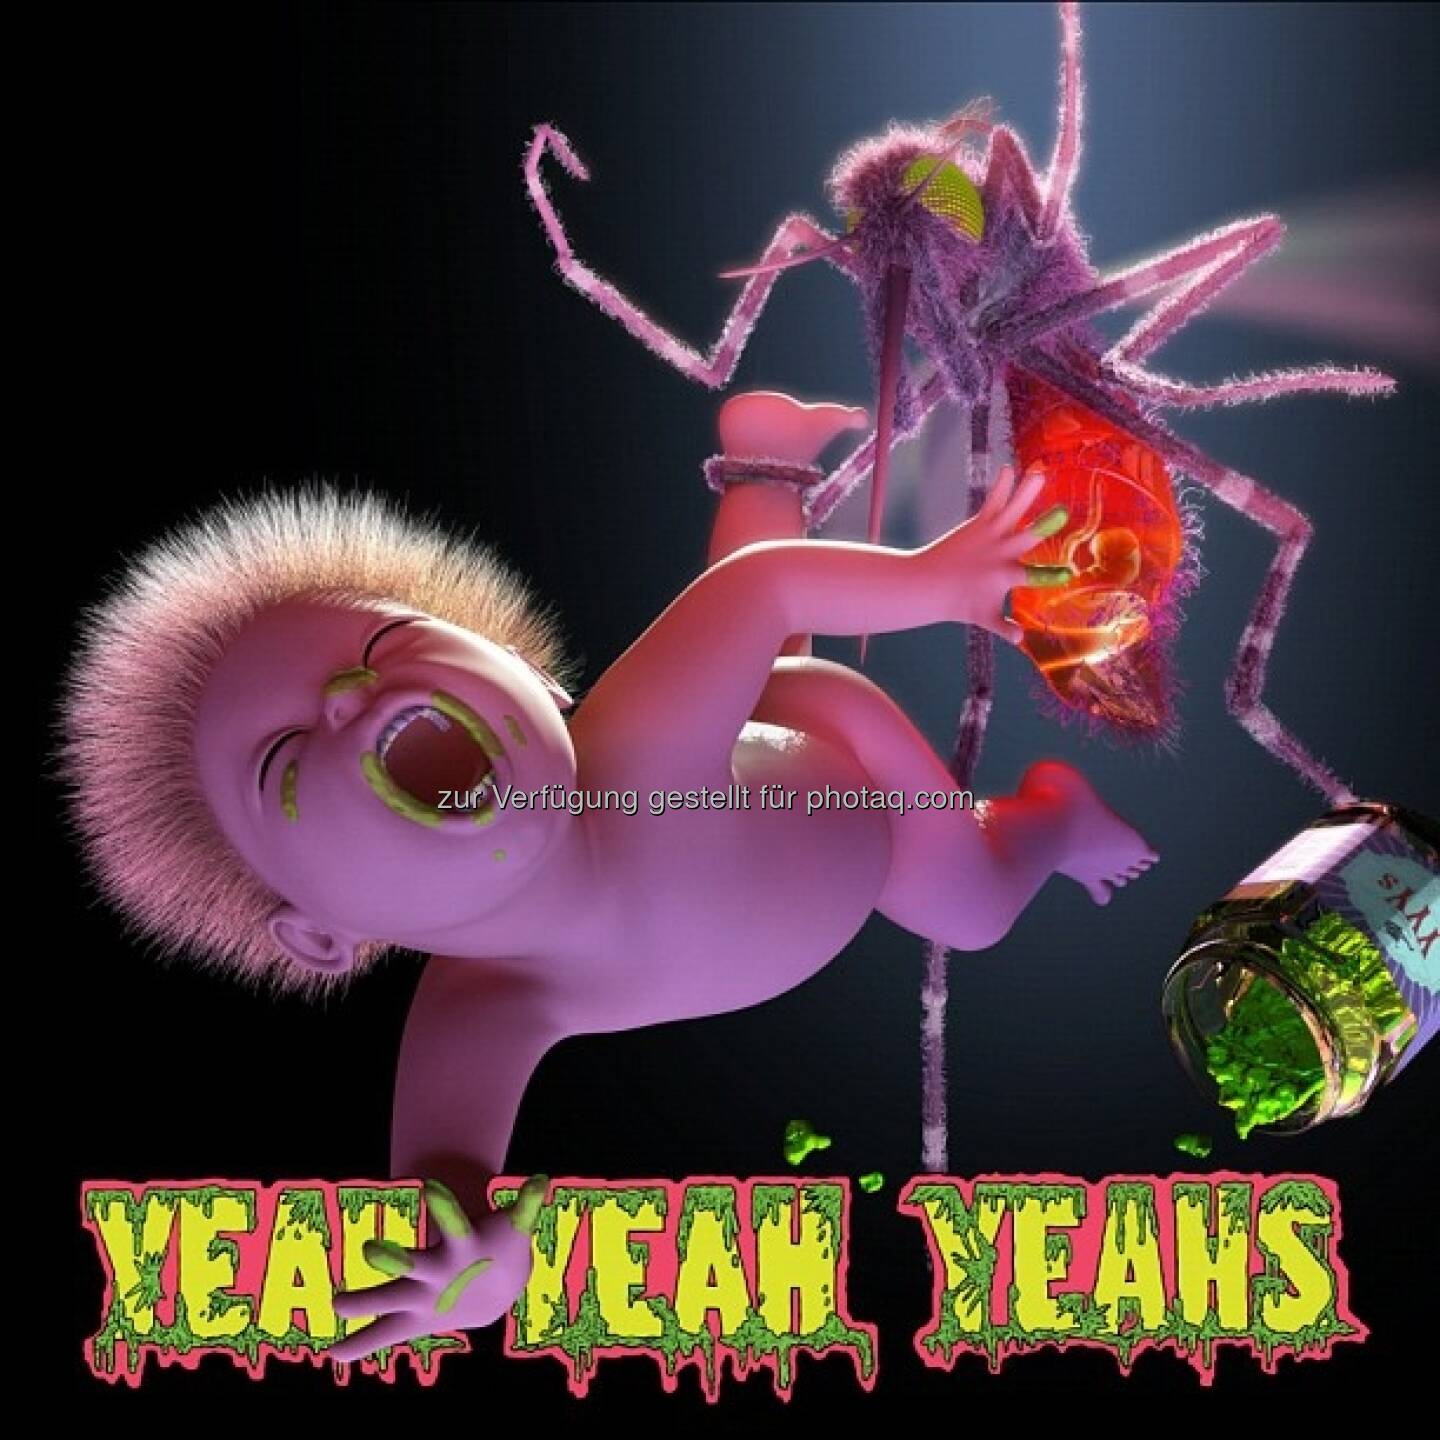 Die Yeah Yeah Yeahs mischen weiter die Musikwelt auf und melden sich mit einem neuen Album zurück. Mosquito erscheint am Freitag (12.04.). Als Retter der New Yorker Indie-Rock-Szene betitelt, erfüllten die Yeah Yeah Yeahs zur Jahrtausendwende die hohen Erwartungen mit Leichtigkeit: Ihr Debütalbum Fever To Tell wurden vom Rolling Stone und dem NME Magazin zu einem der besten Alben des Jahres gewählt und auch die Nachfolger Show Your Bones und It's Blitz überzeugten Kritiker und Publikum. 
Zehn Jahre nach ihrem Debütalbum legen die Yeah Yeah Yeahs jetzt ihr viertes Studioalbum vor. Was erwartet die Fans auf Mosquito erwartet: Es geht um positive Gefühle. Wir hoffen, dass die Fans die Platte hören und etwas spüren. Wir haben so viel in die neuen Songs gelegt, es war, als ob eine Strickleiter zu uns in die Tiefe gelassen wird, damit wir hinaufklettern und uns den Staub von den Klamotten klopfen. Ich hoffe, andere werden auch hochklettern. Wir sind sehr aufgeregt, die gute Stimmung zu teilen, erzählt Sängerin Karen O. 